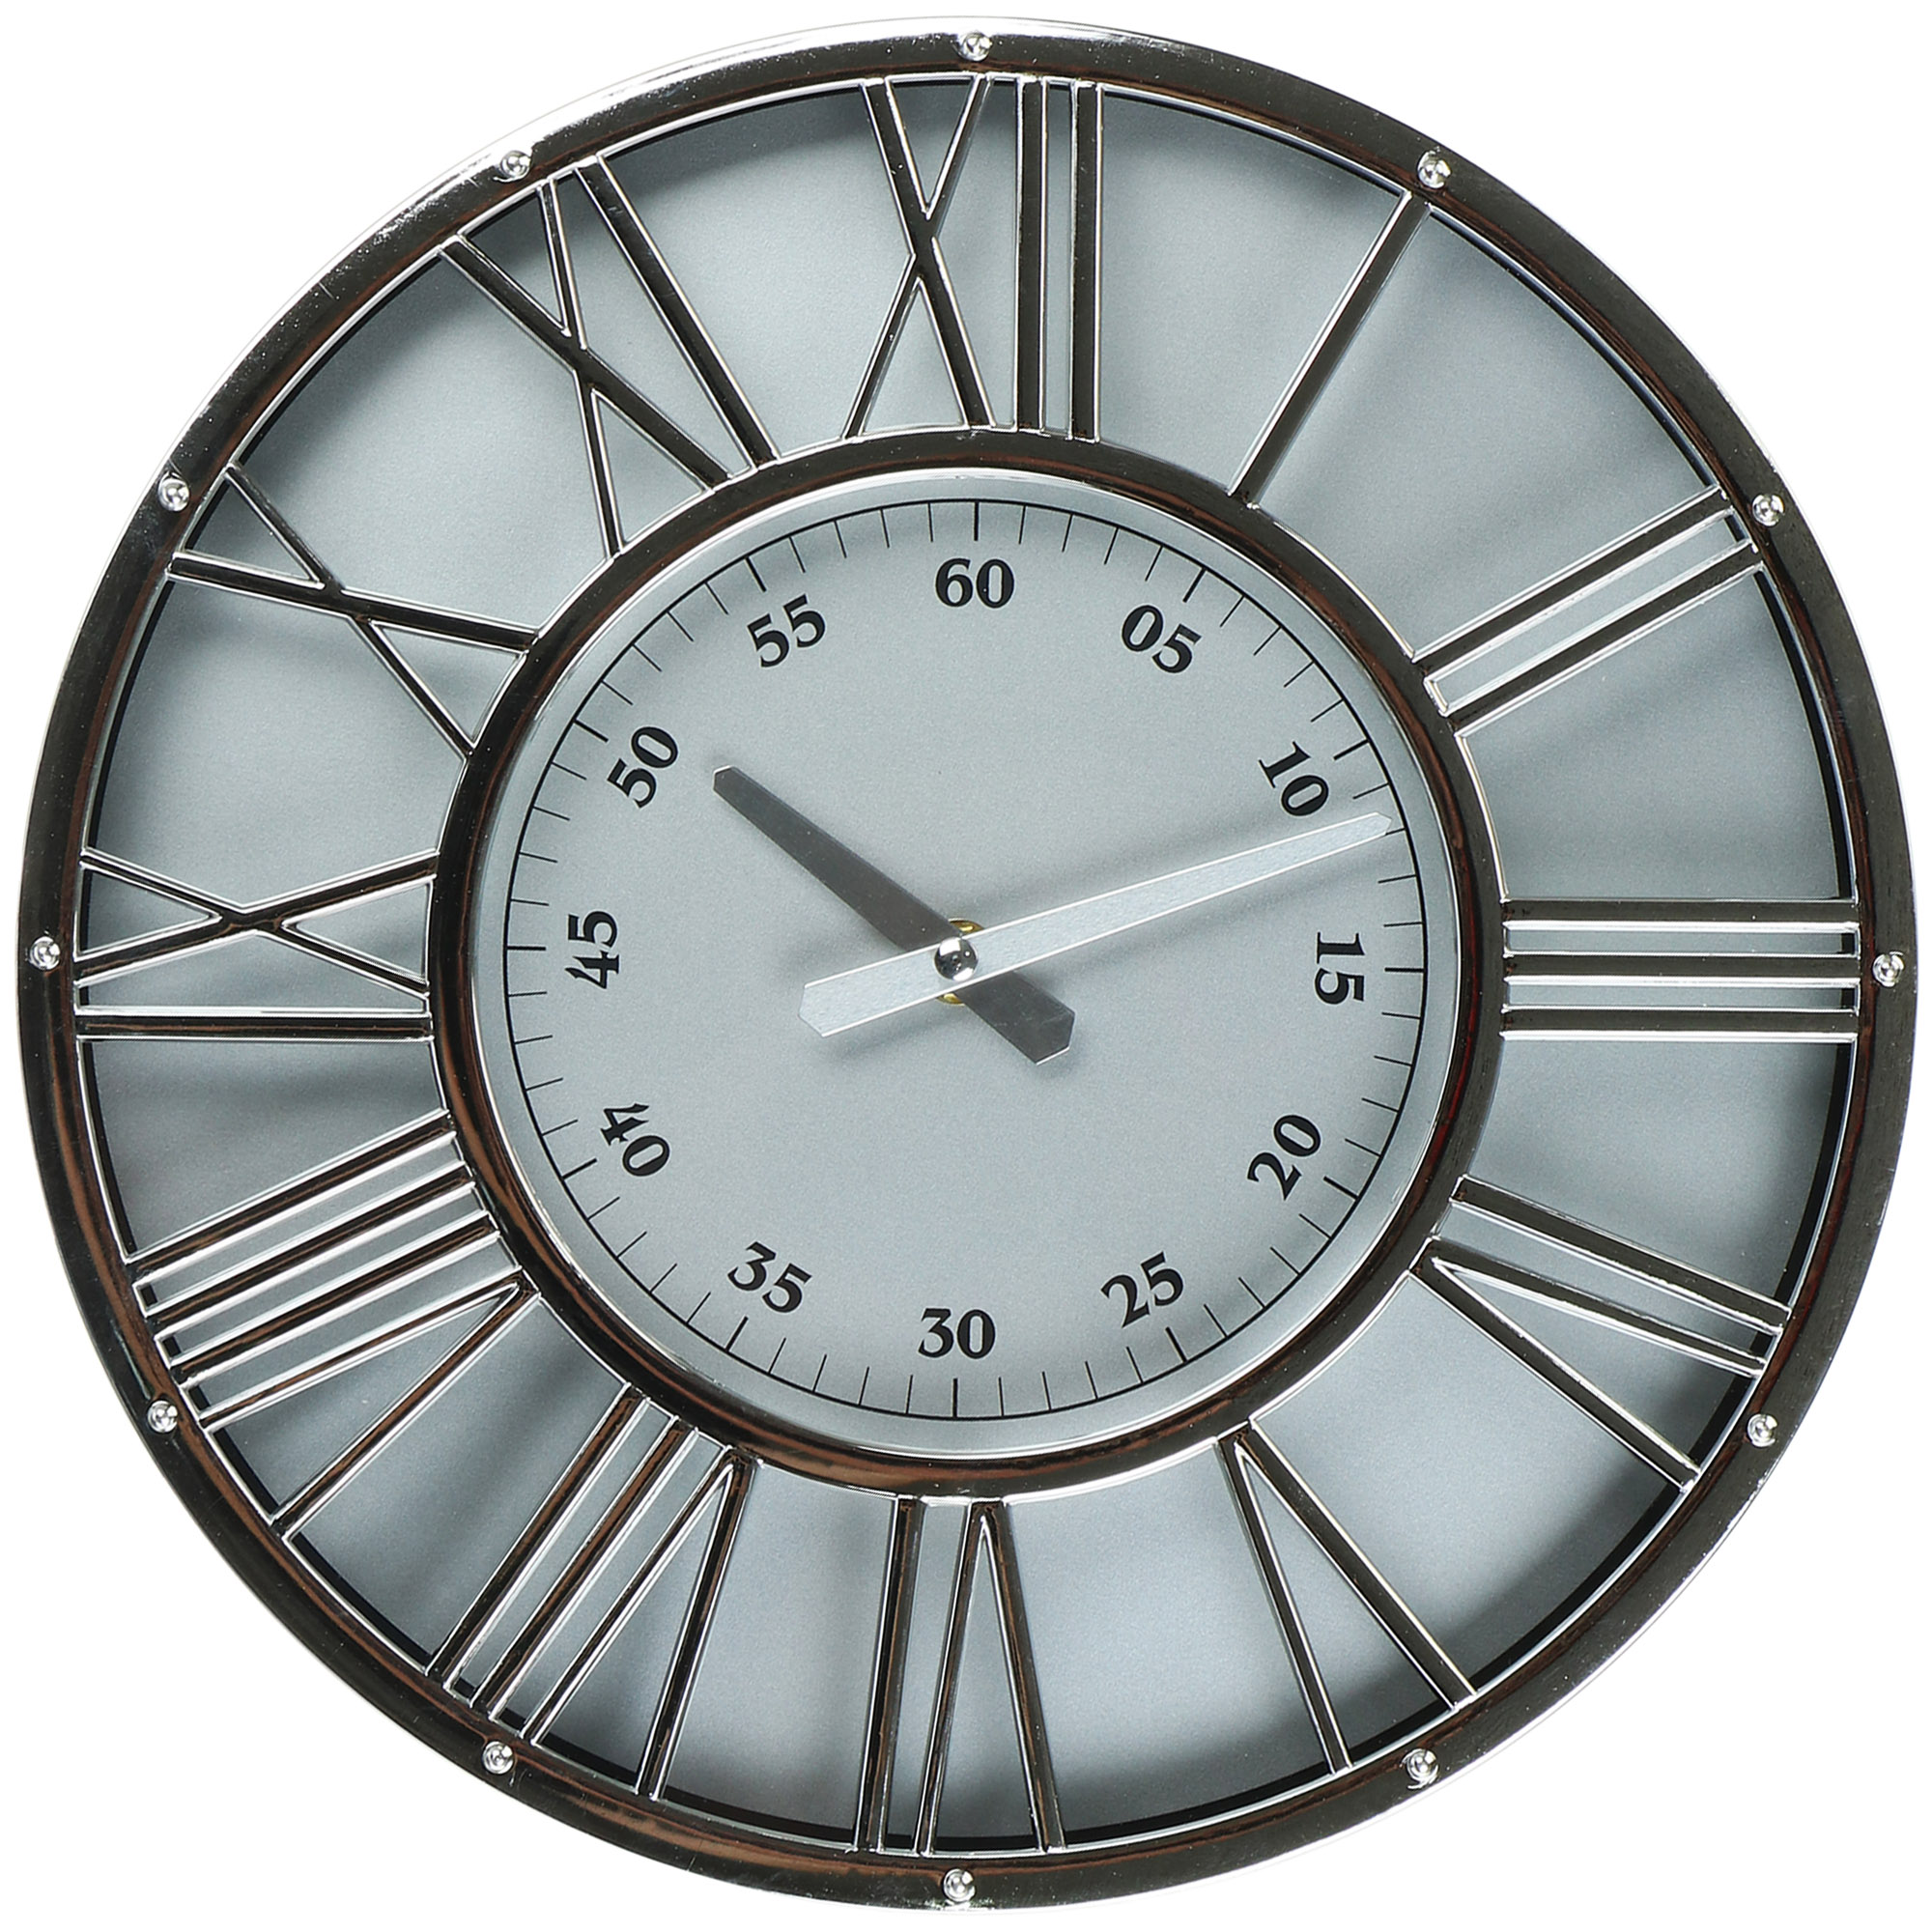 Часы настенные Kanglijia Clock серебряные 30,4х4,1х30,4 см часы электронные настенные настольные будильник термометр календарь d 30 см